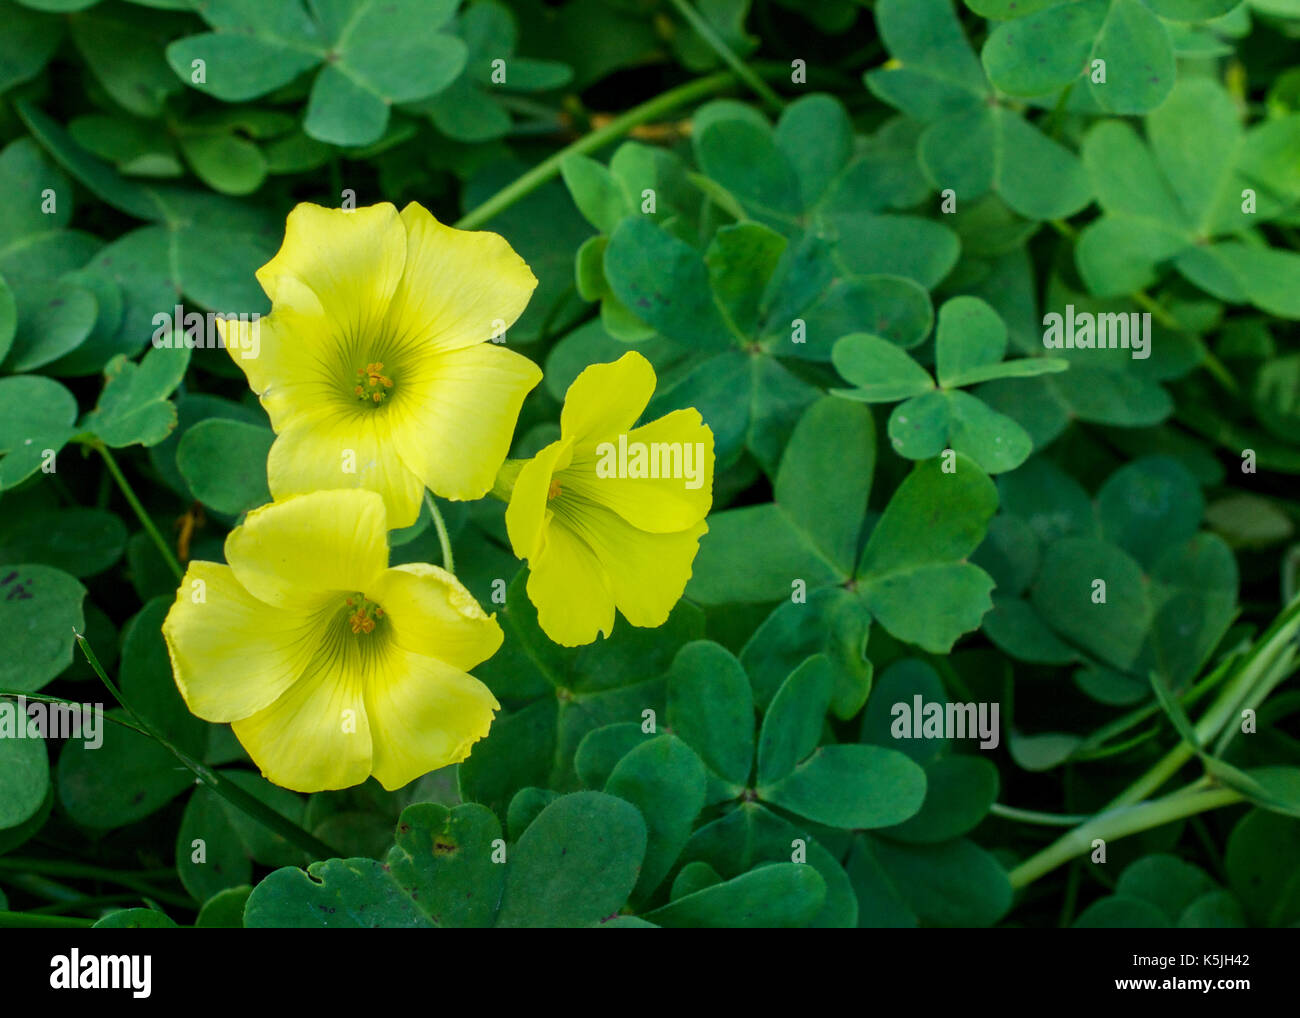 Gros plan sur l'oxalis jaune fleurs du jardin sur fond vert, les feuilles de printemps Banque D'Images